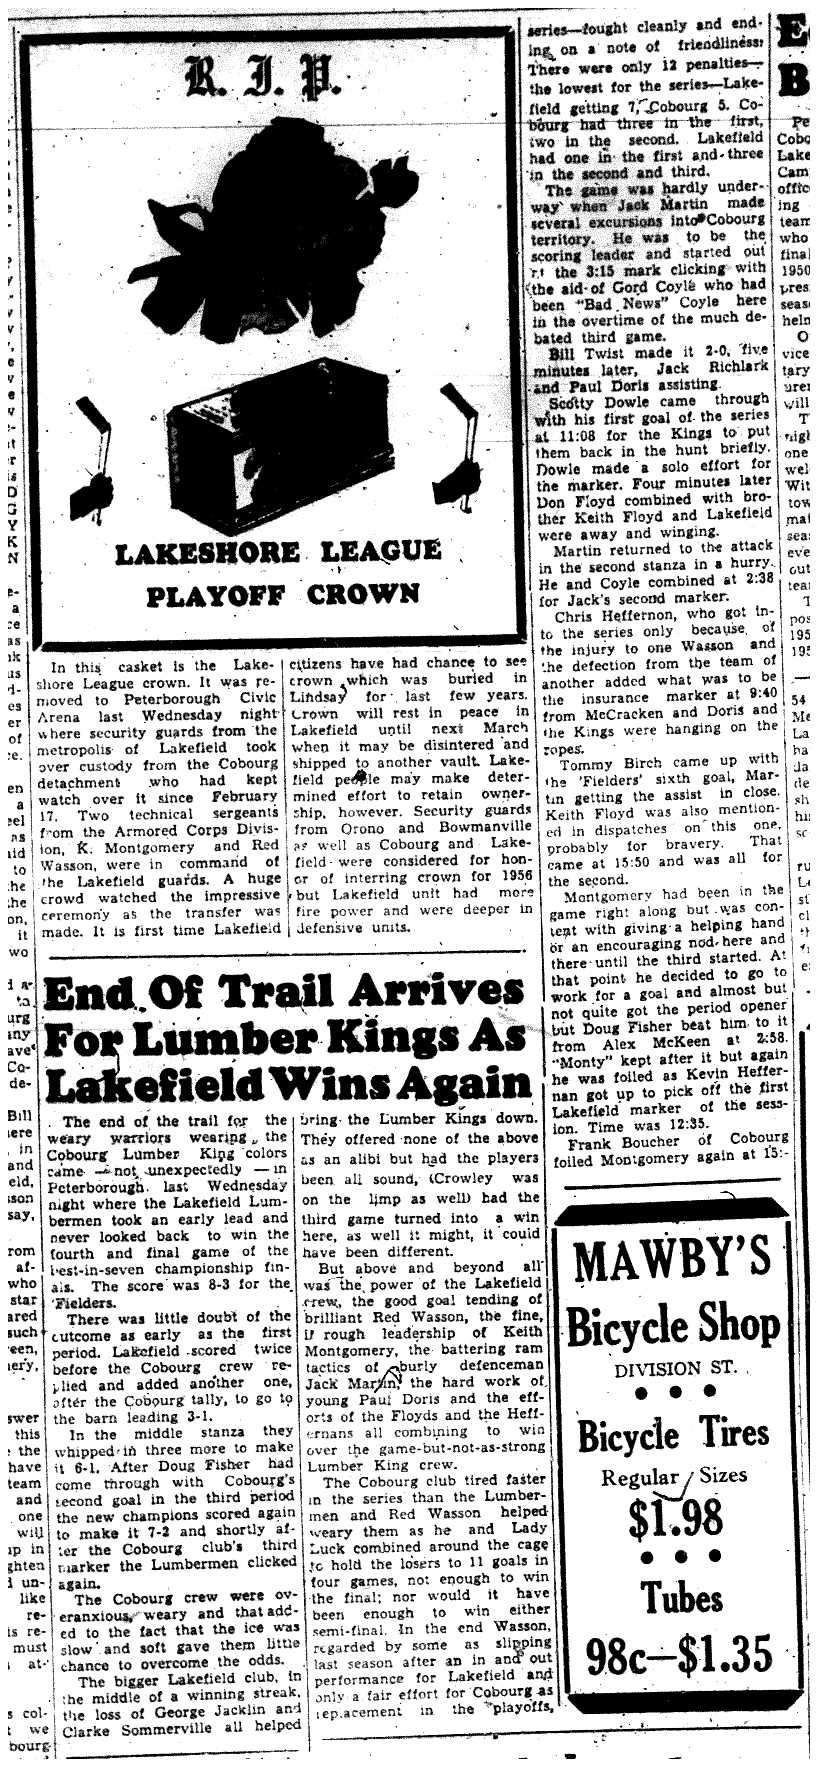 1956-03-22 Hockey -Intermediates -Lumber kings lose finals to Lakefield